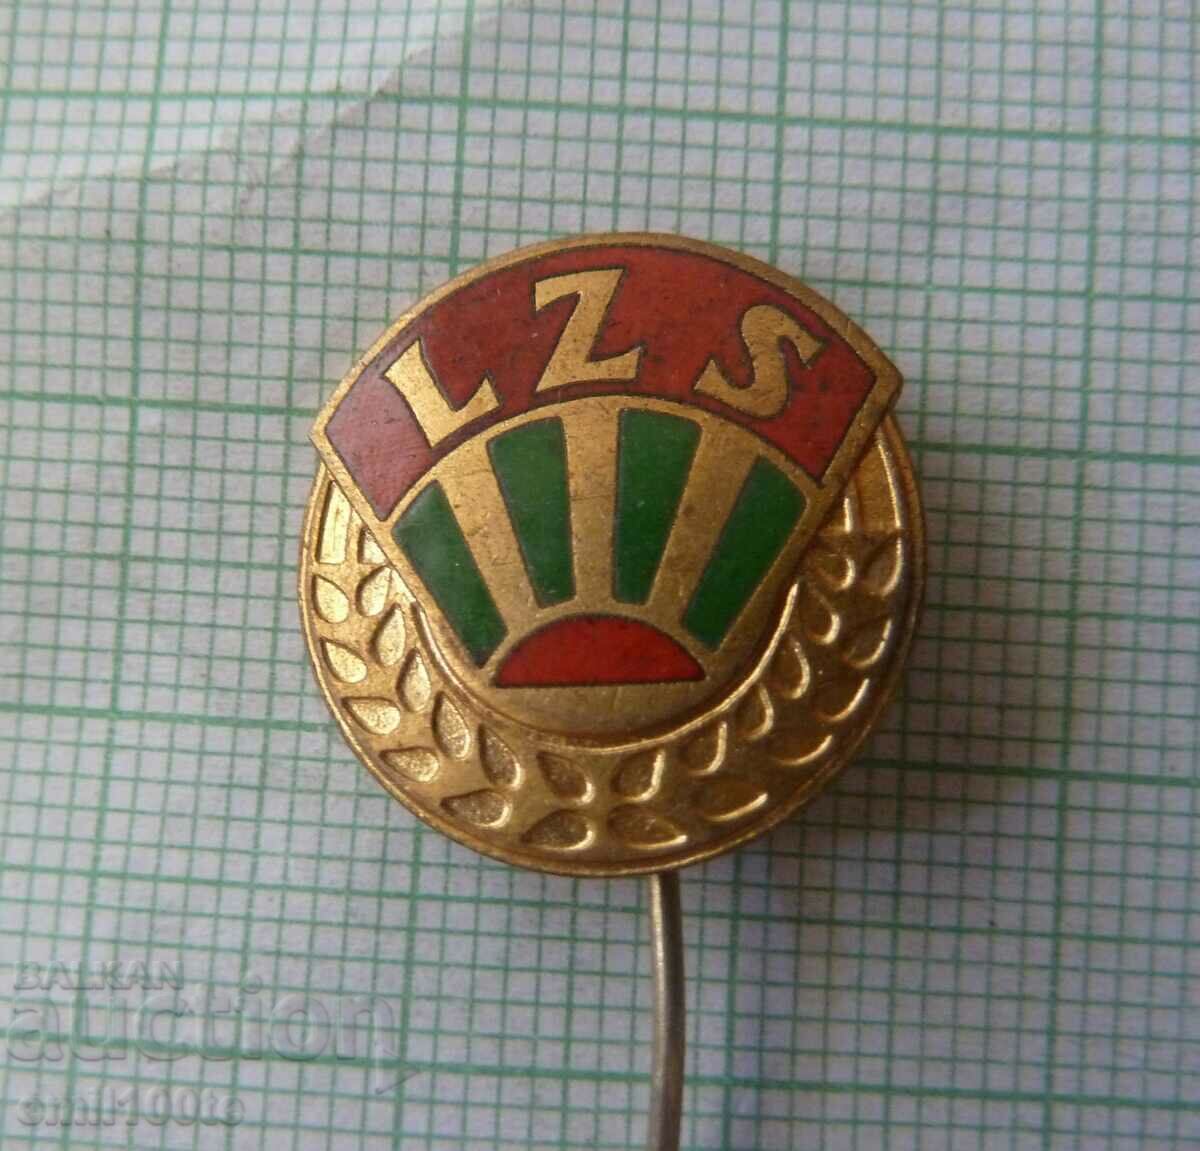 Σήμα - LZS Οργανισμός Αγροτικών Αθλητικών Σωματείων στην Πολωνία